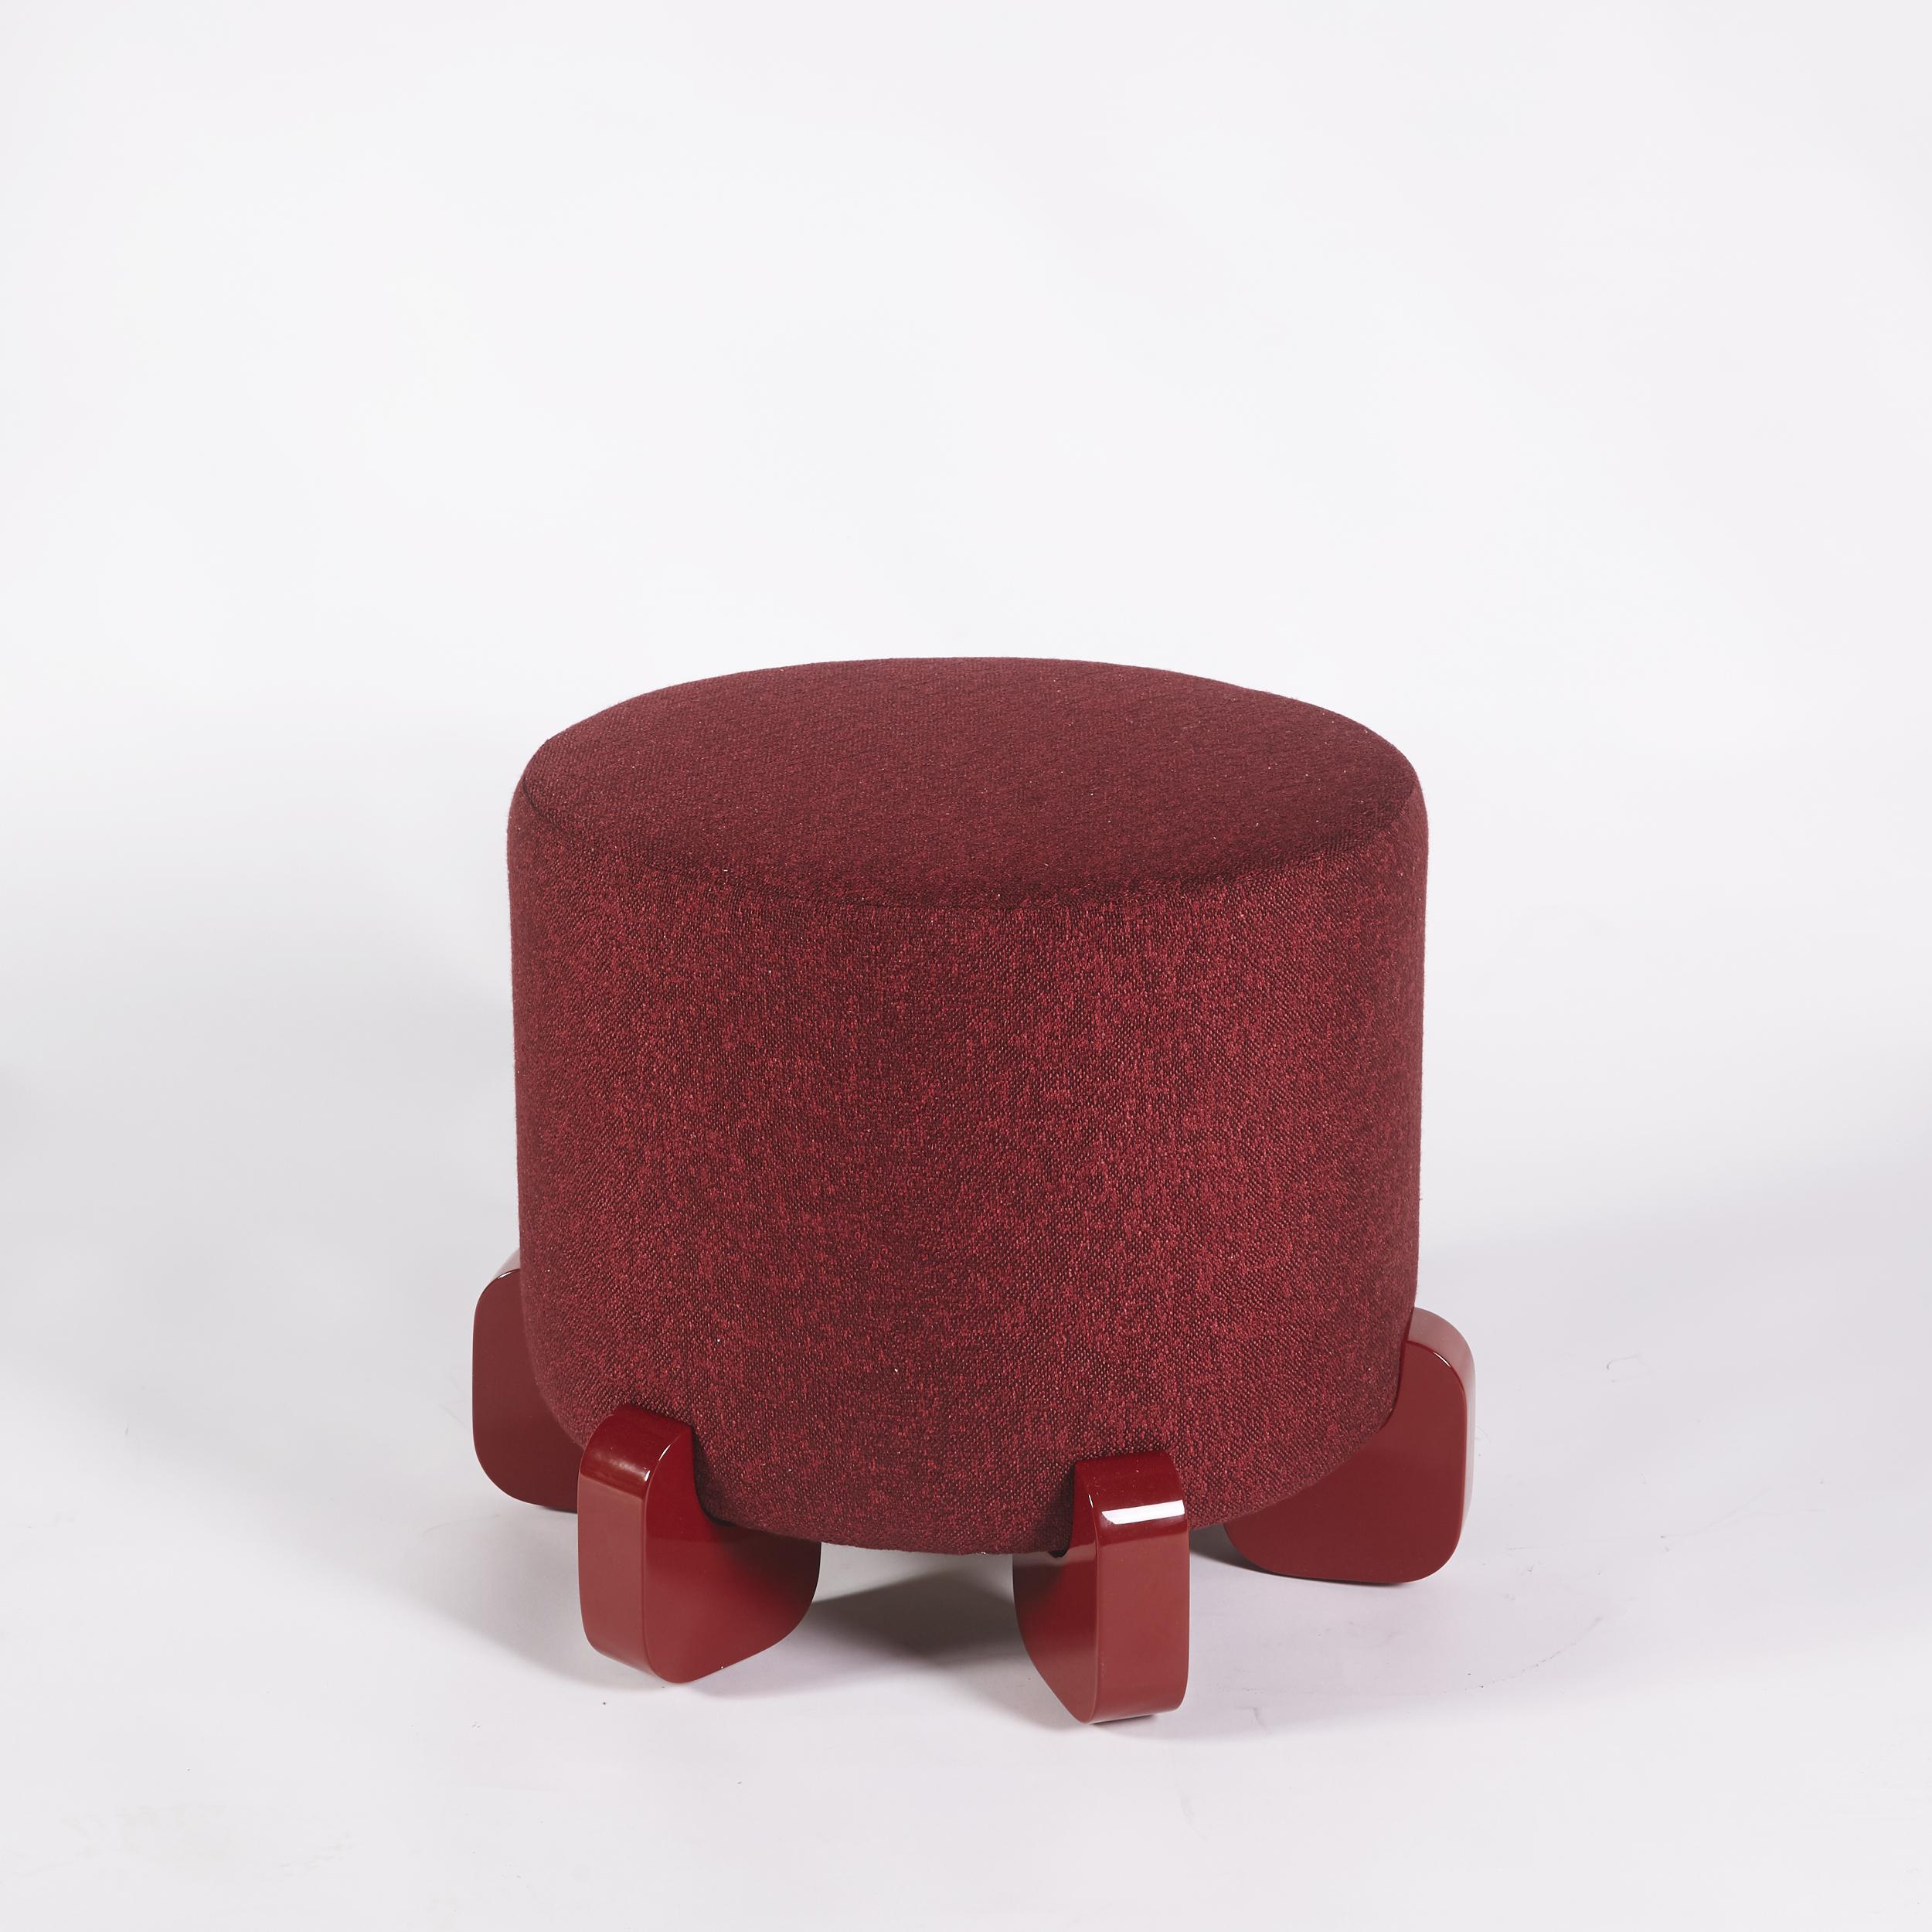 Tabouret Ipanema, pieds en bois laqué par Duistt

Suite de la série Ipanema qui fait référence à l'imaginaire du célèbre trottoir de Rio de Janeiro. Les tabourets Ipanema sont disponibles en deux versions, revêtus d'un tissu rouge profond, mais avec